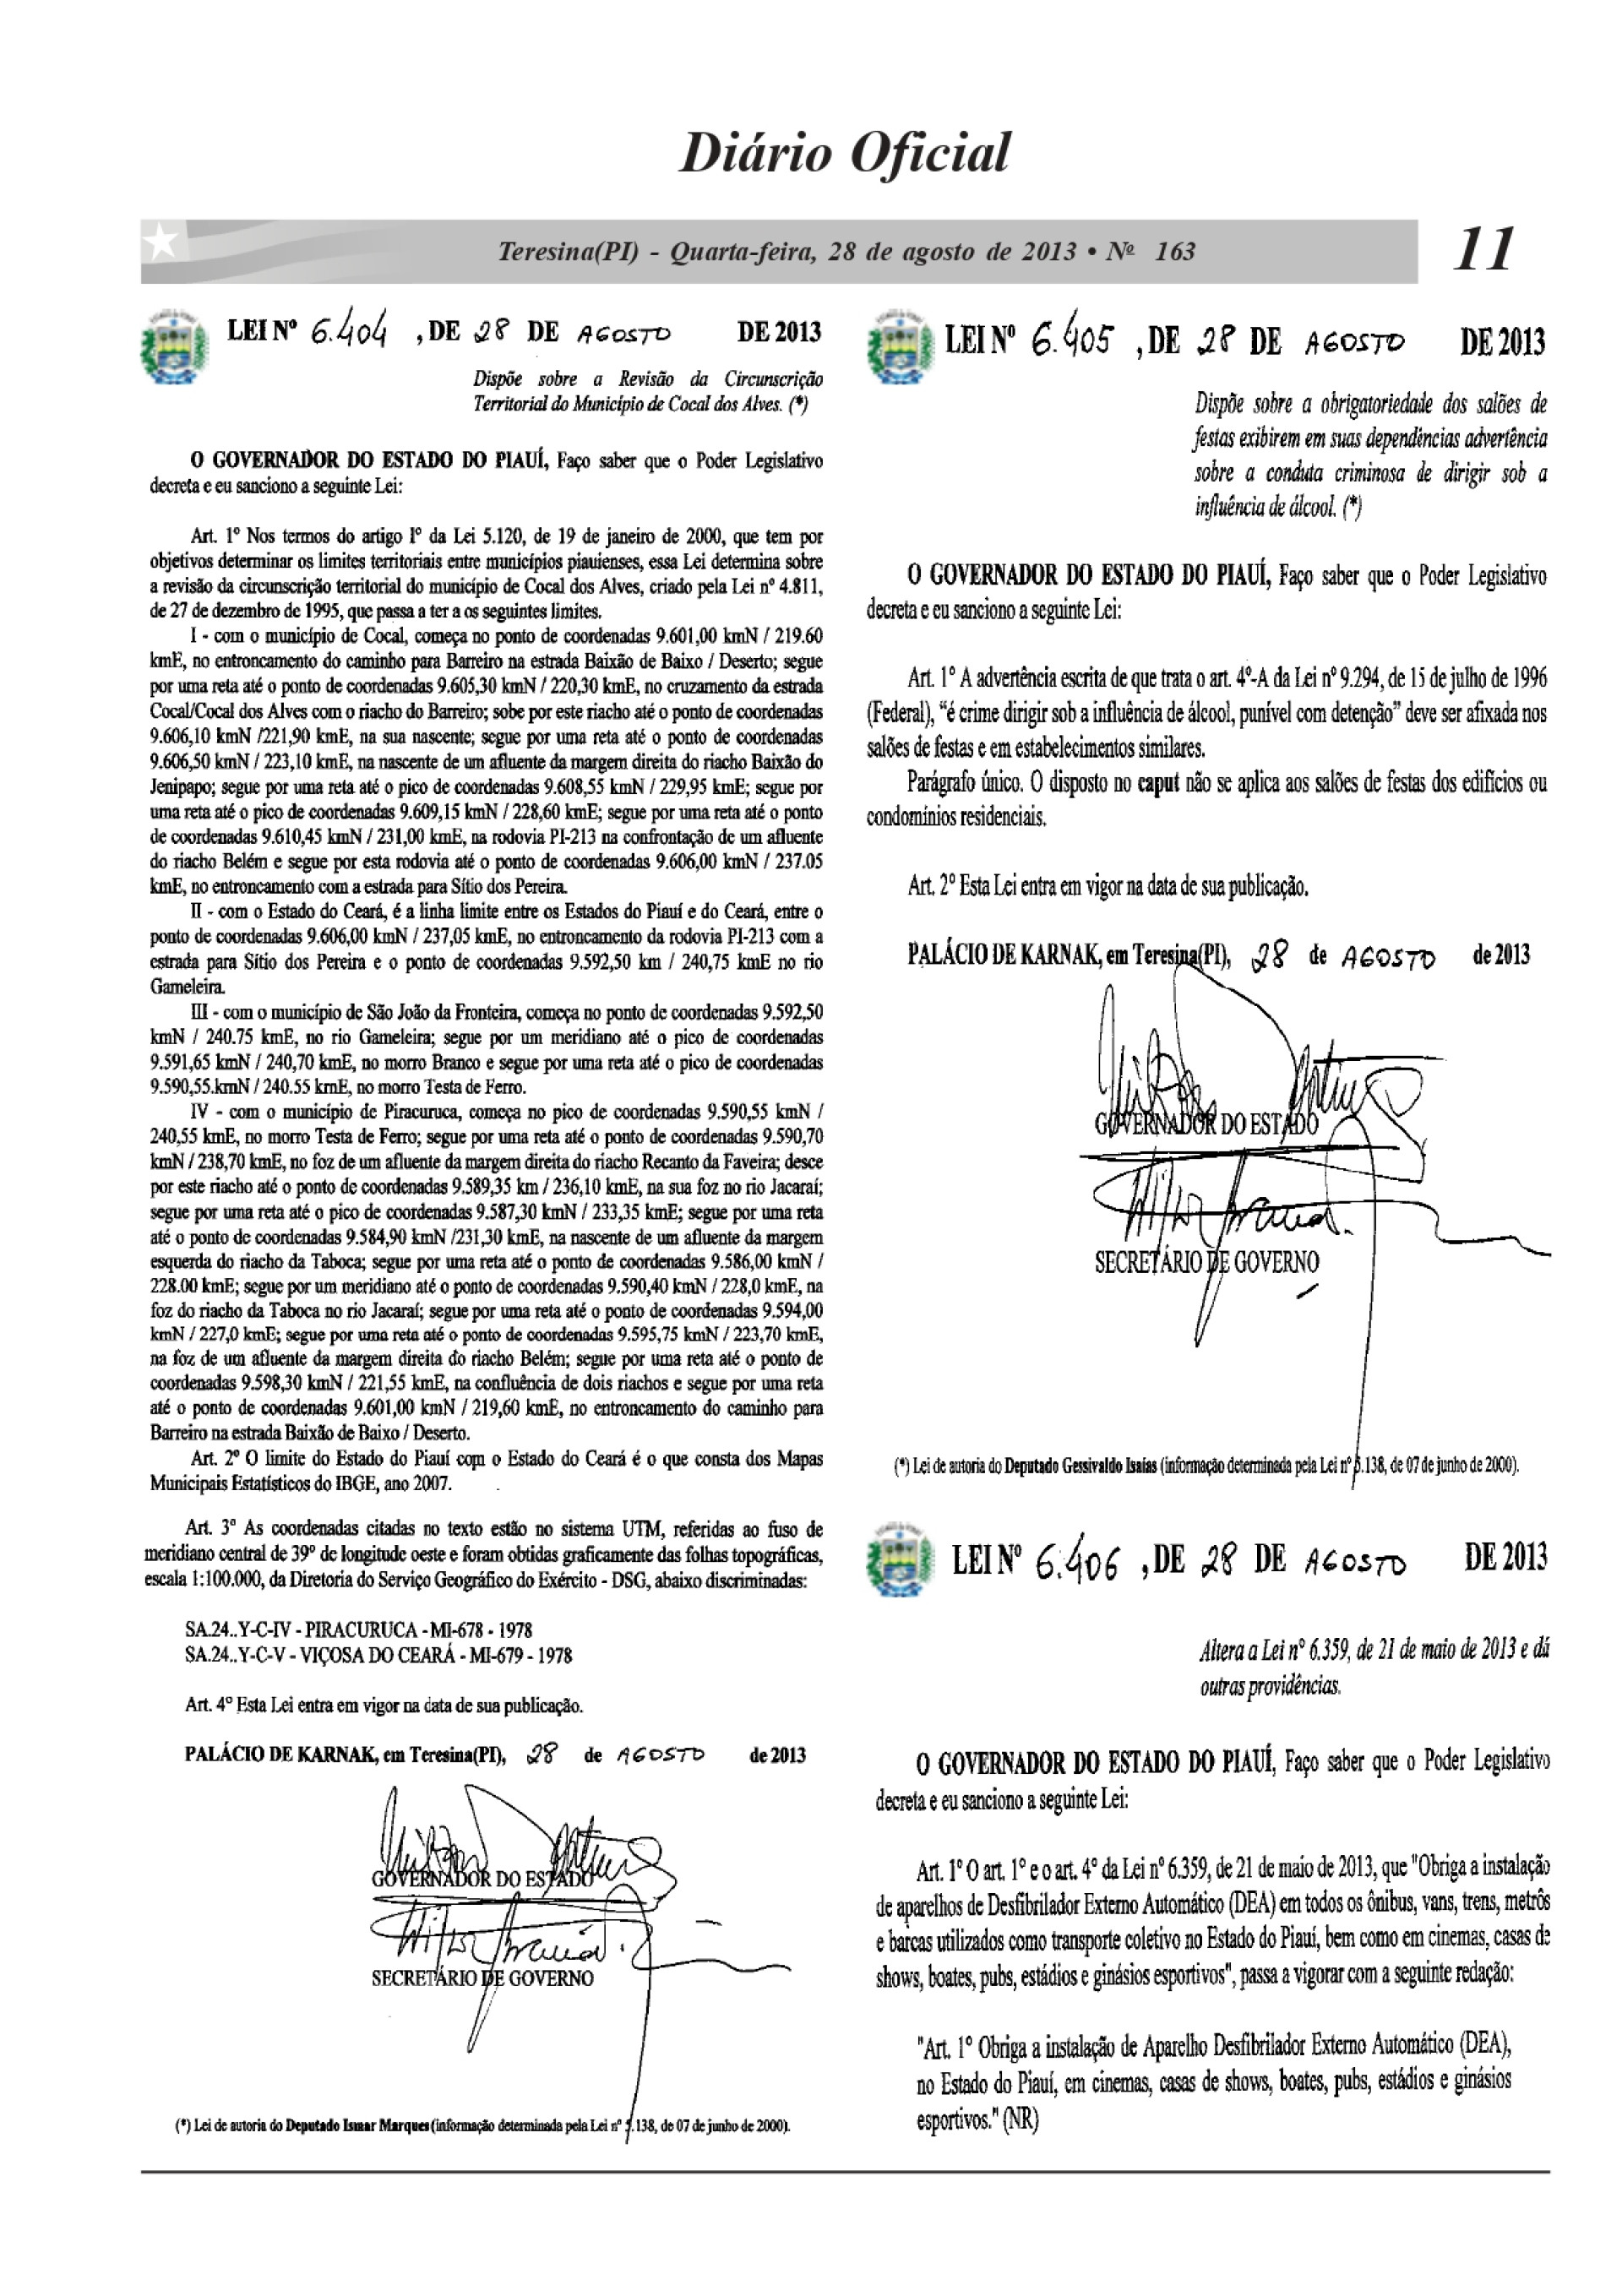  Lei Estadual nª 6.404 do Piauí, que delimita o território piauiense